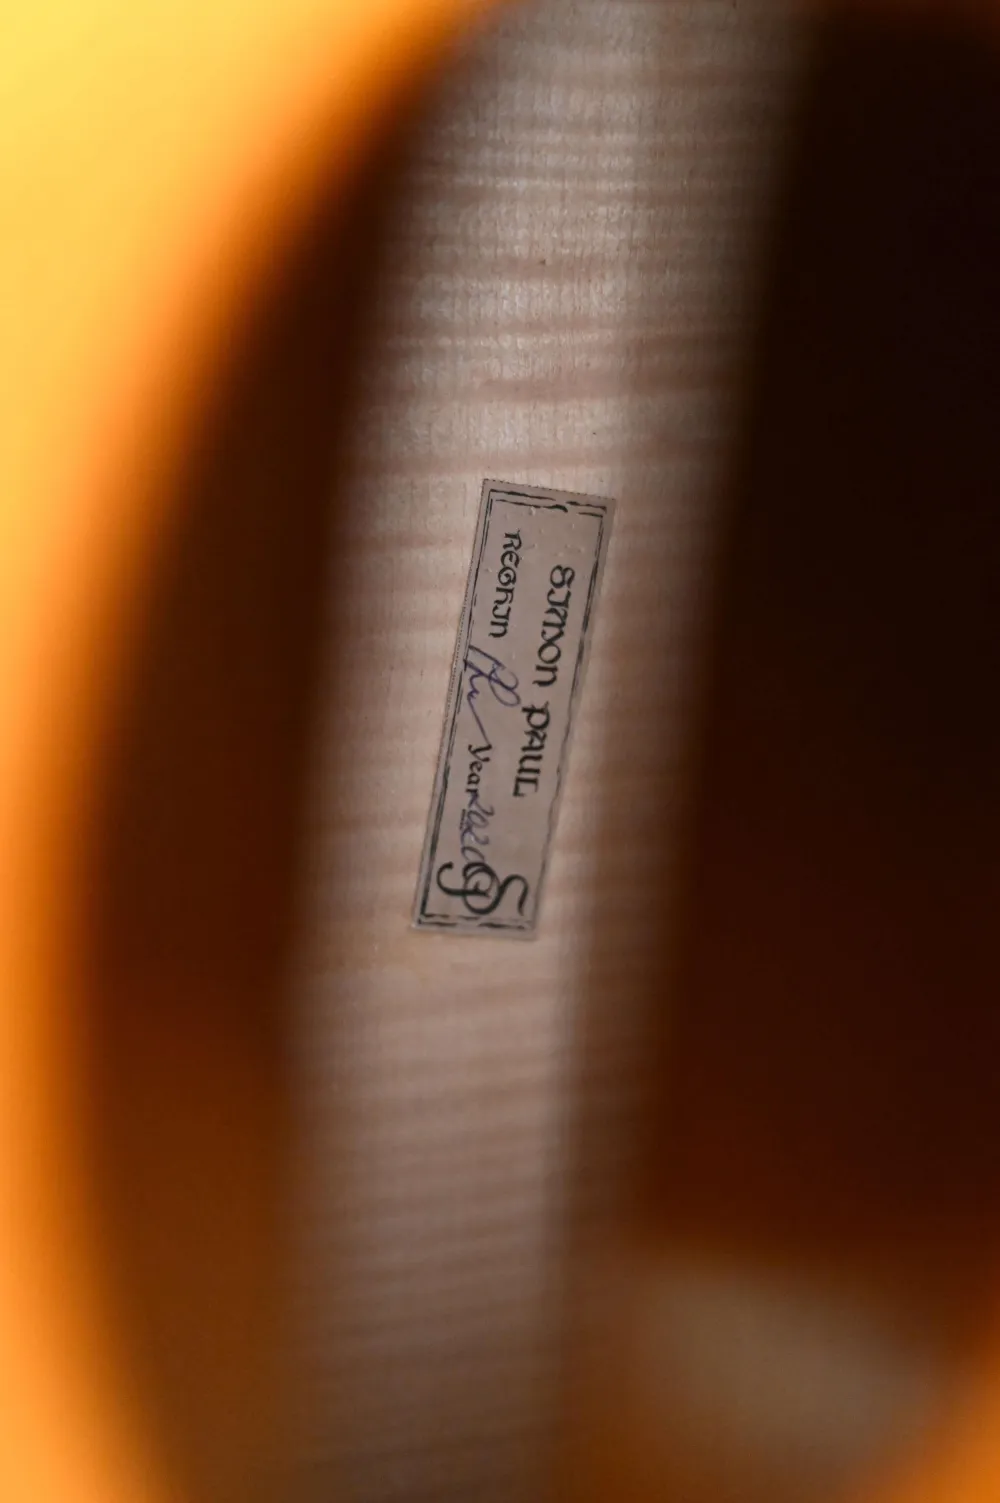 Etikettenansicht eines Simon Paul 4/4 Meister Cello (Violoncello) nach Stradivarius, Handarbeit 2020